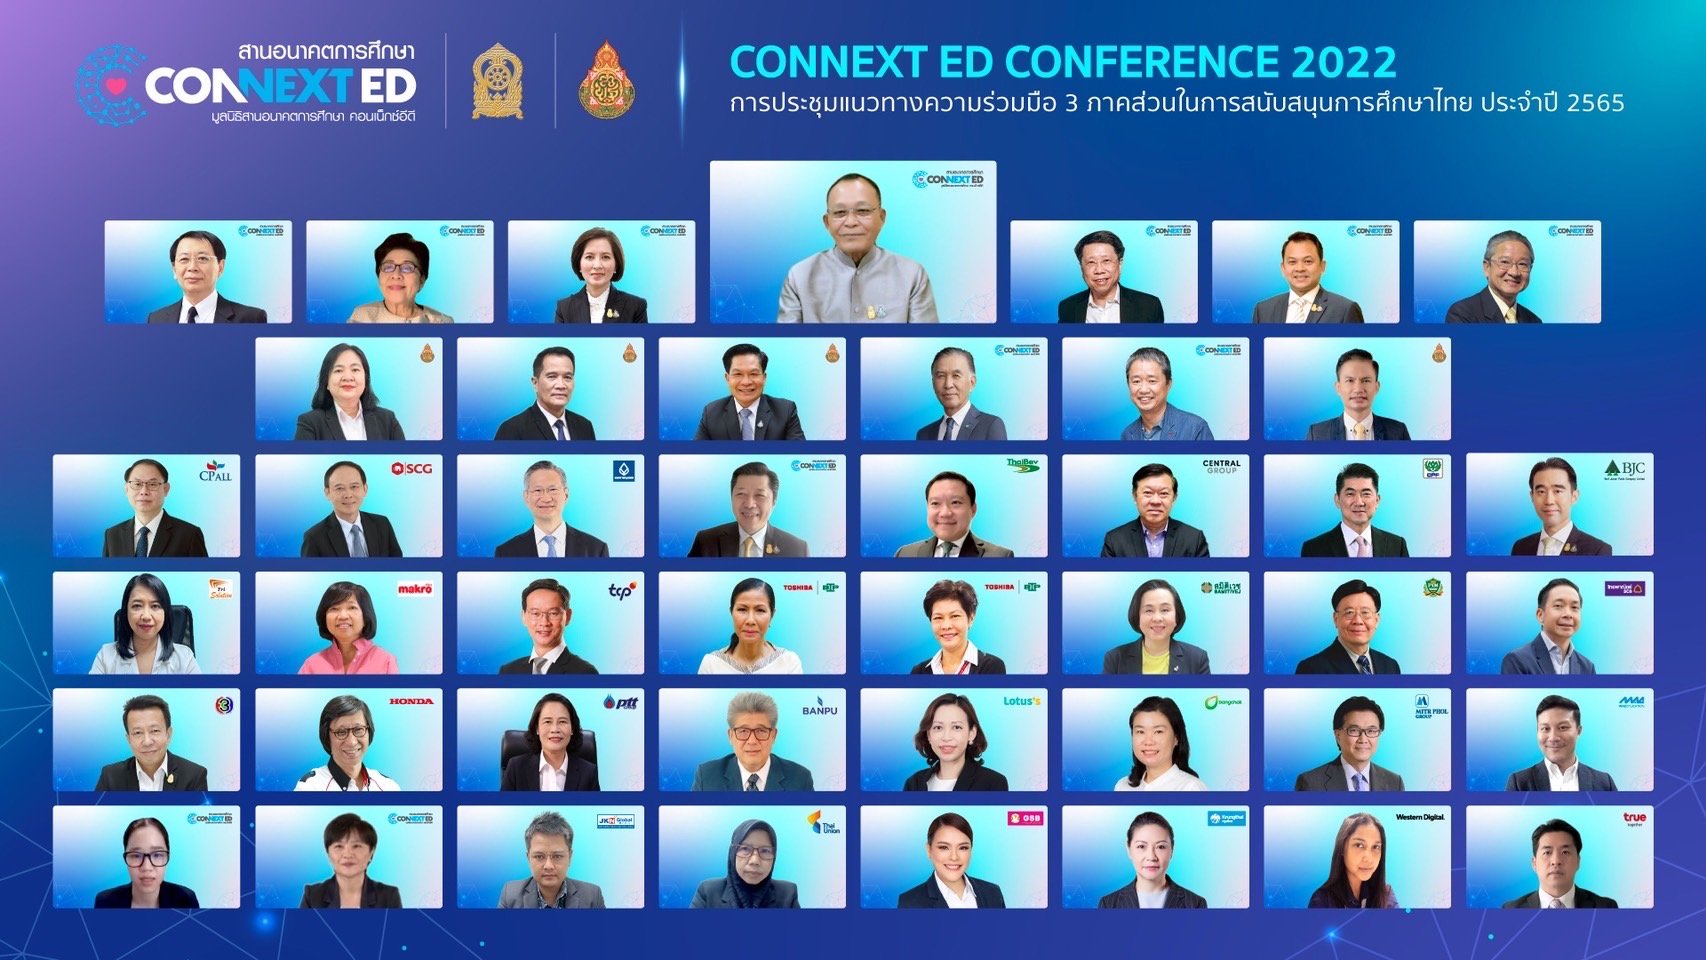 ช่อง 3 เดินหน้ารวมพลังขับเคลื่อนการศึกษาไทยในการประชุม CONNEXT ED 2565